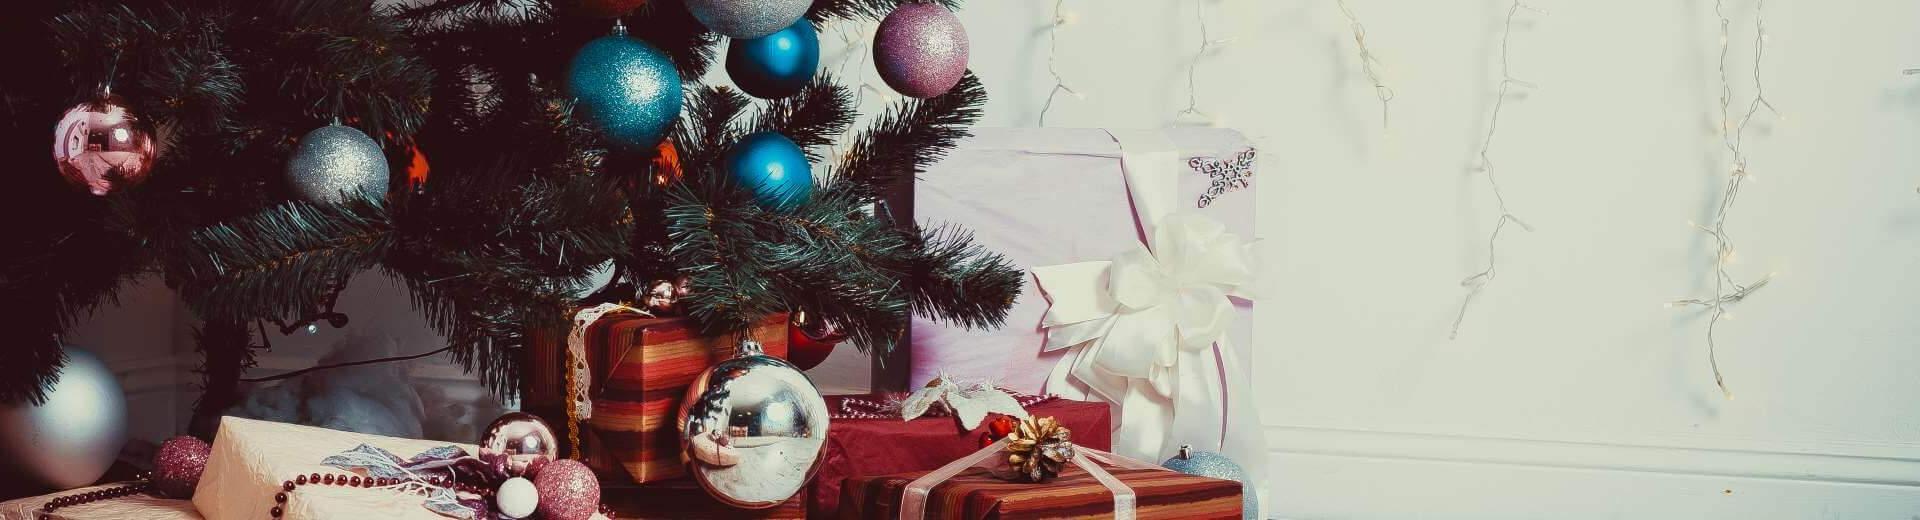 Weihnachten im Ferienhaus in Spanien | Casamundo - Casamundo